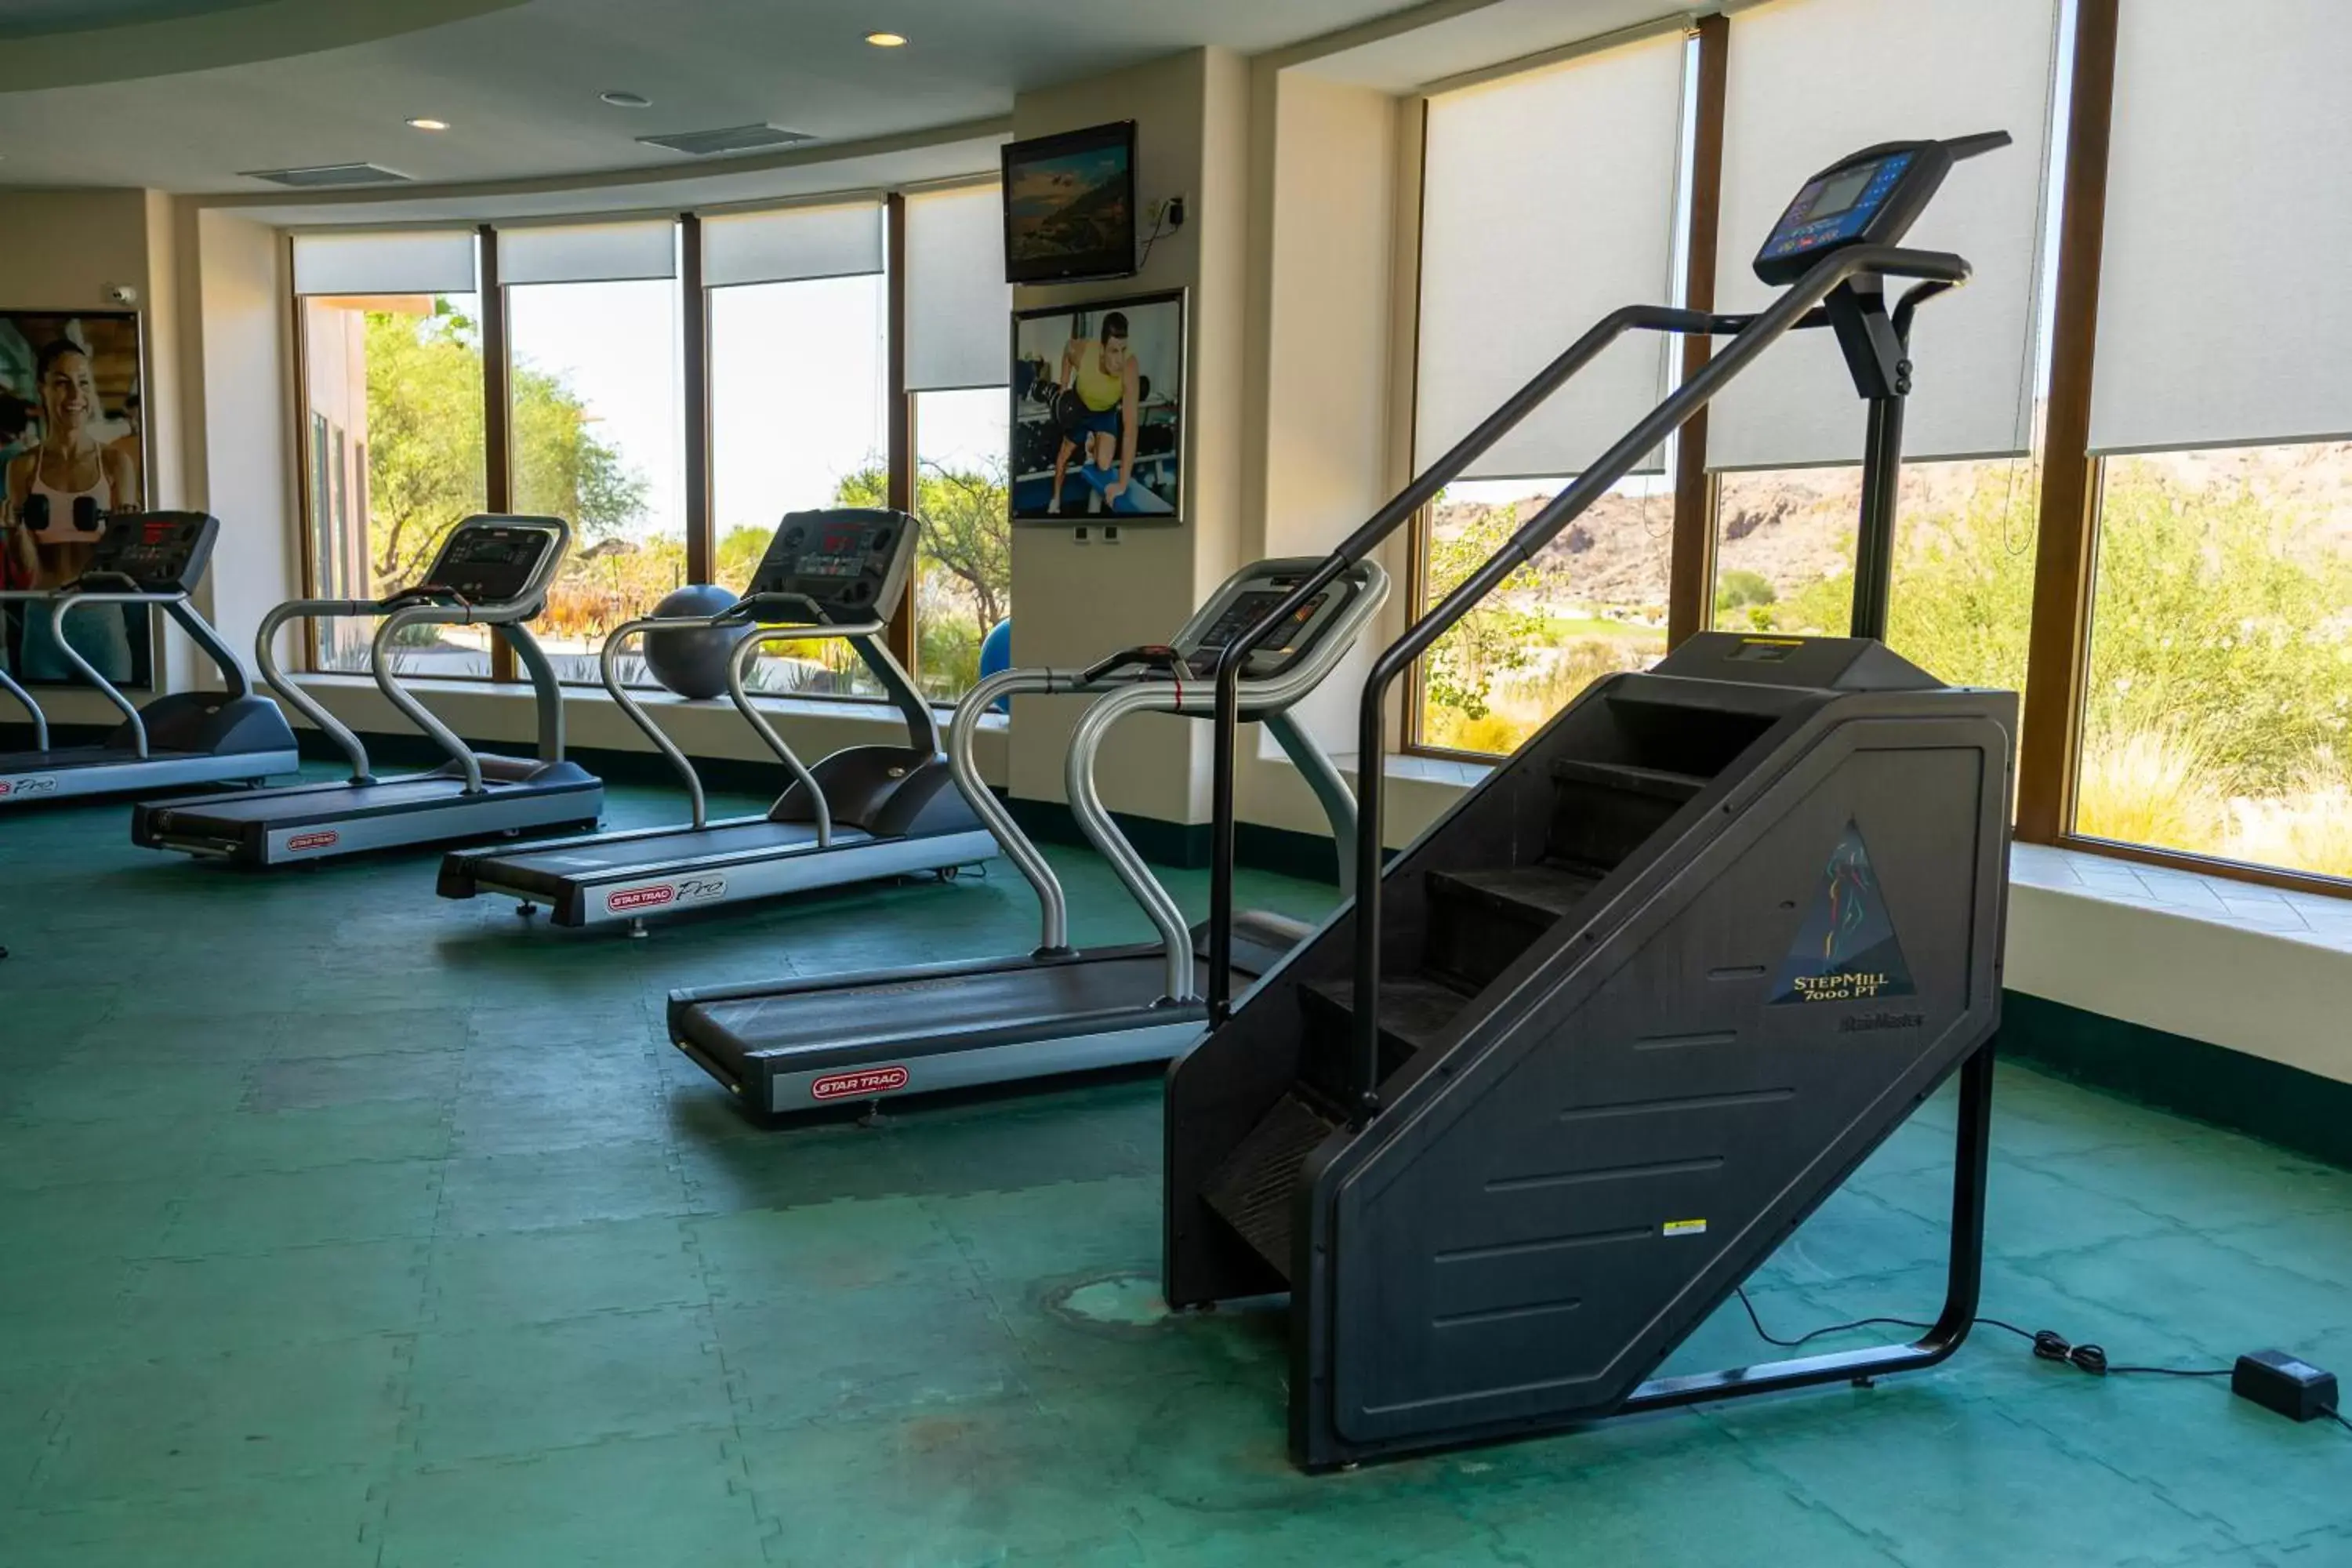 Fitness centre/facilities, Fitness Center/Facilities in Villa Del Palmar At The Islands Of Loreto